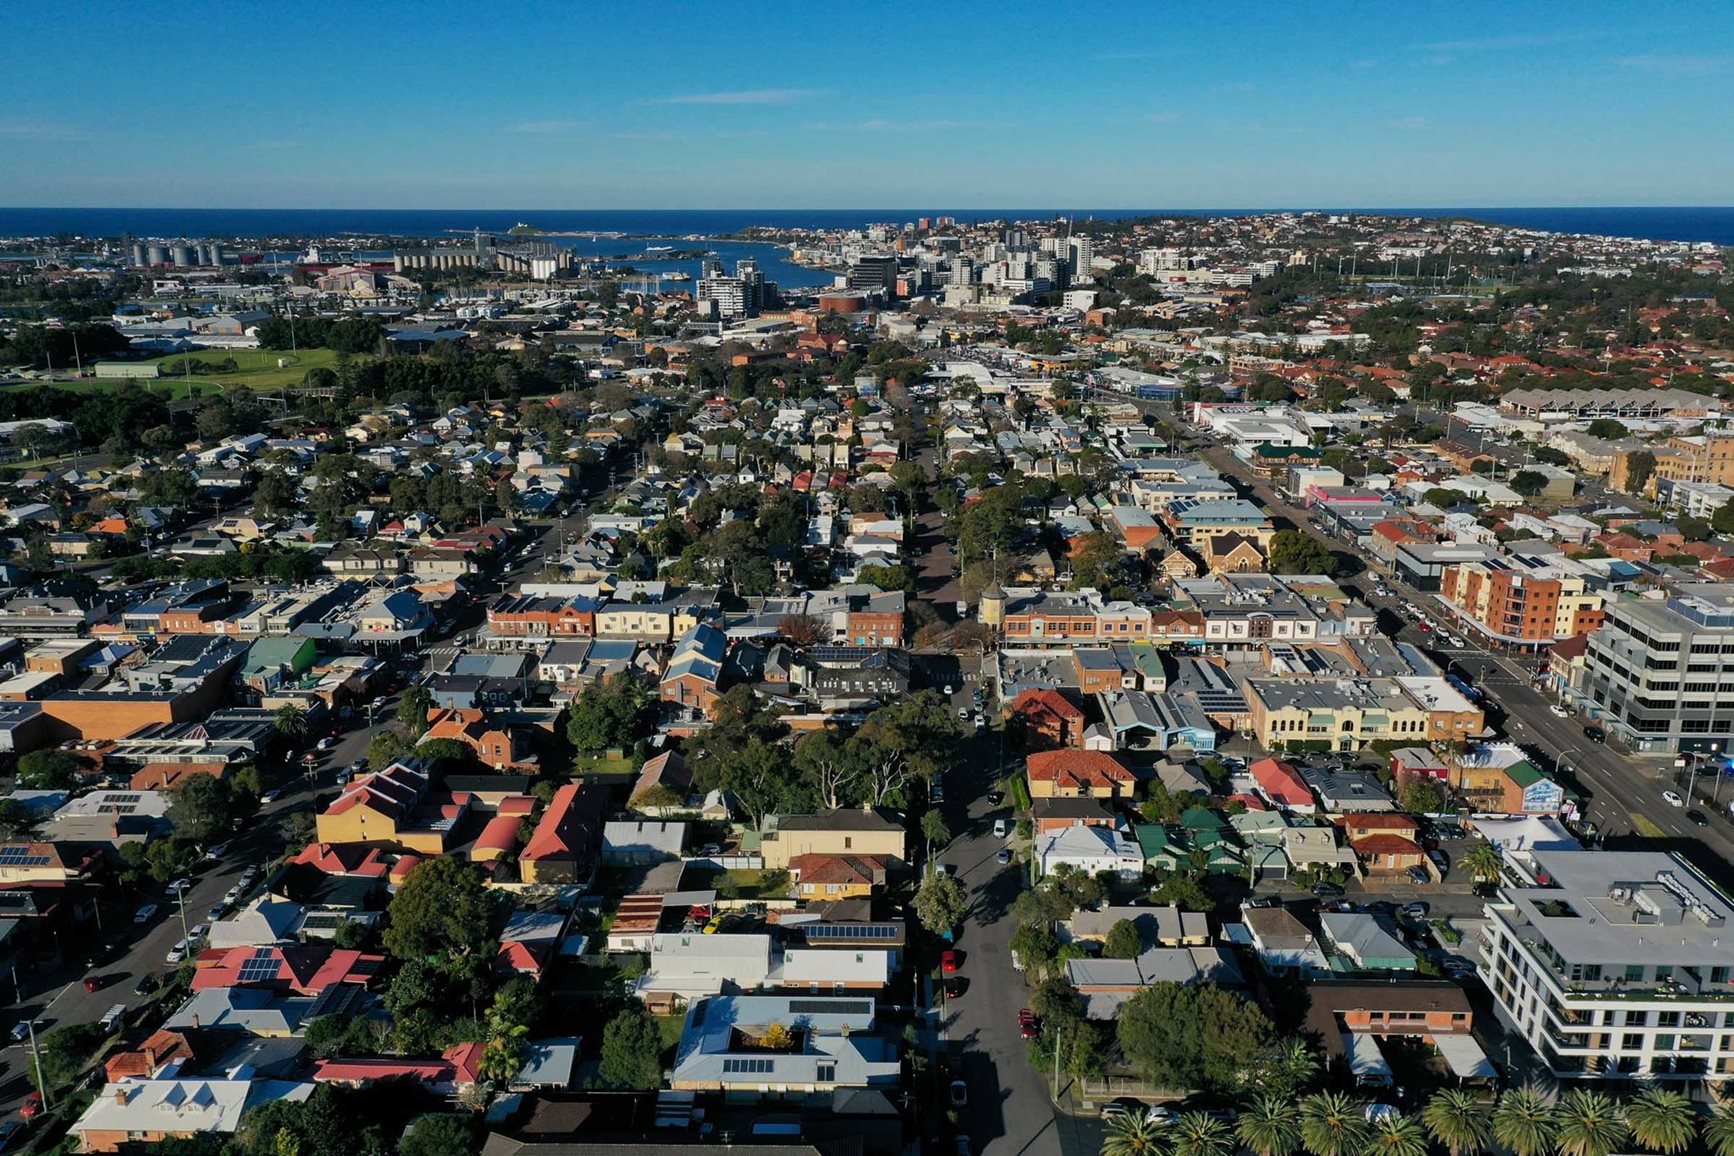 Aerial view of Hamilton suburb